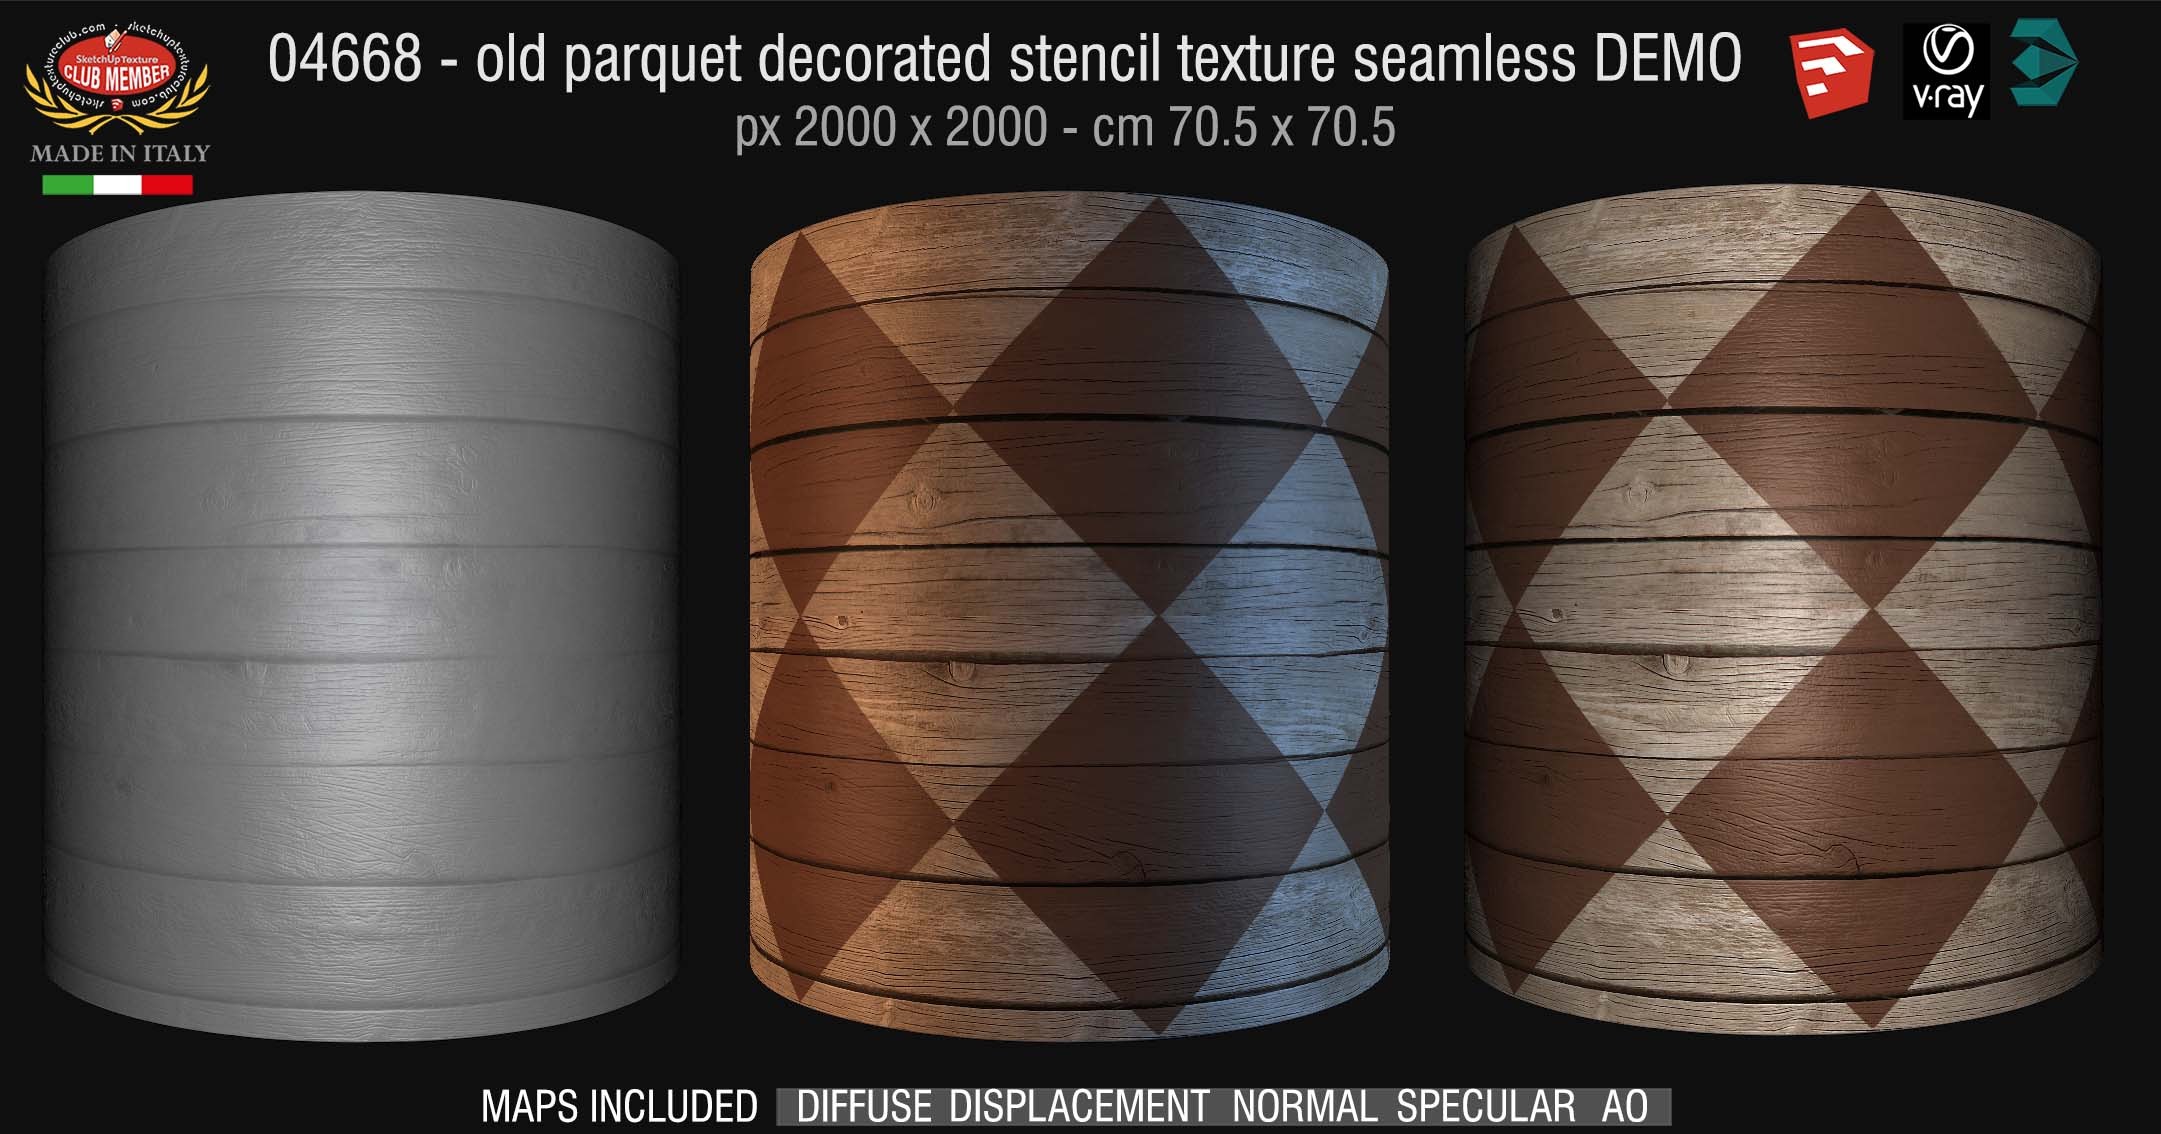 04668 HR Parquet decorated stencil texture seamless + maps DEMO